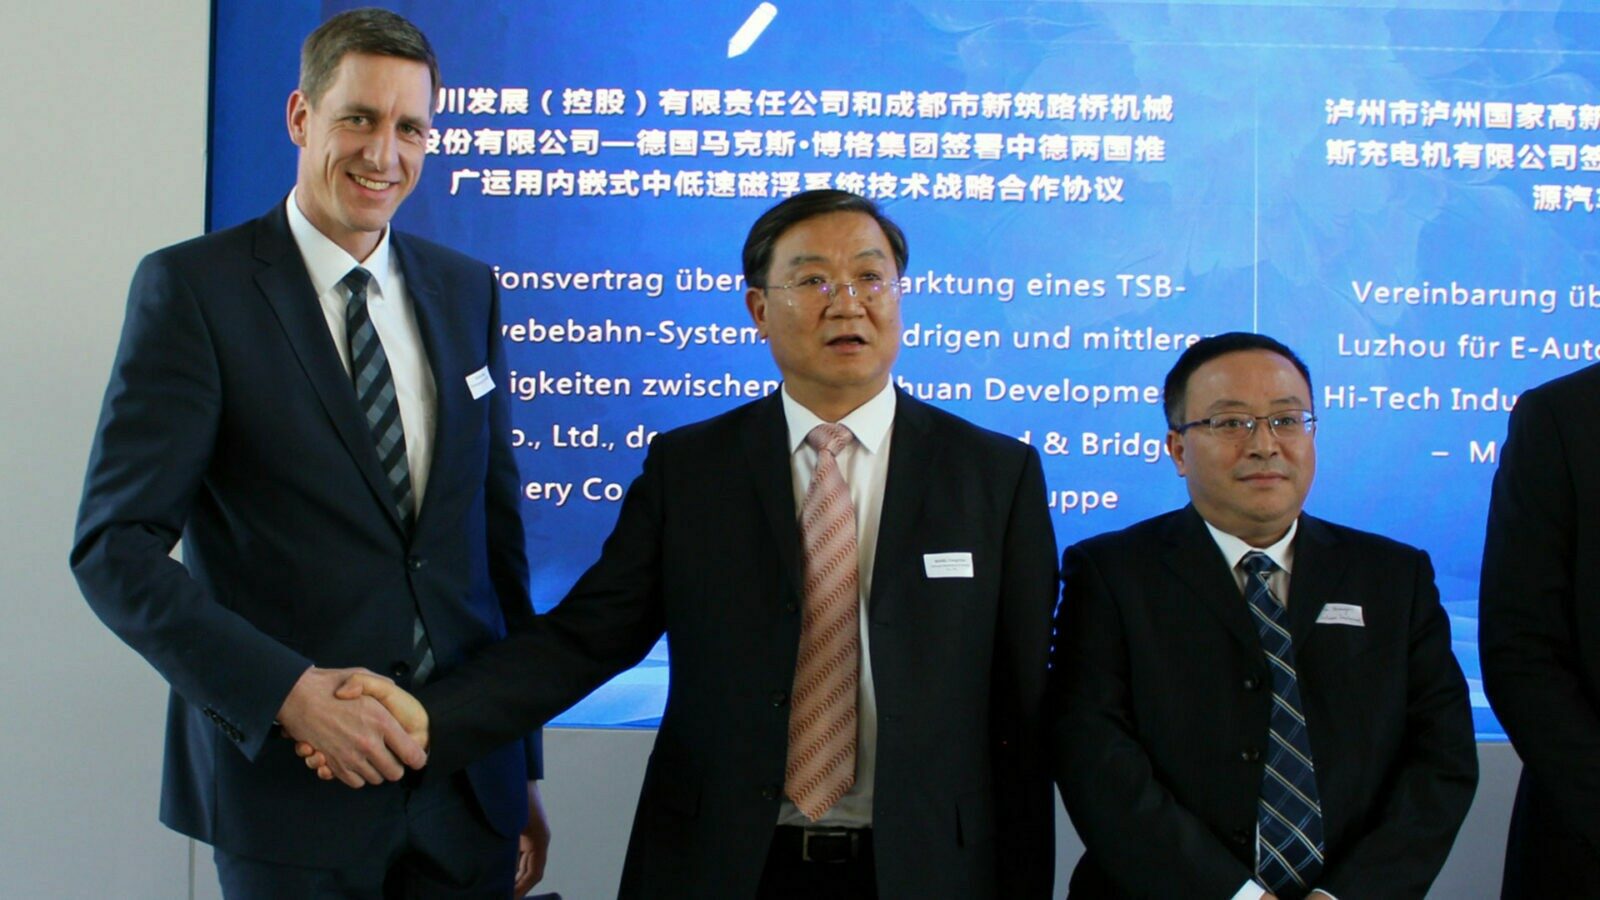 TSB press Chengdu Strategische Partnerschaft